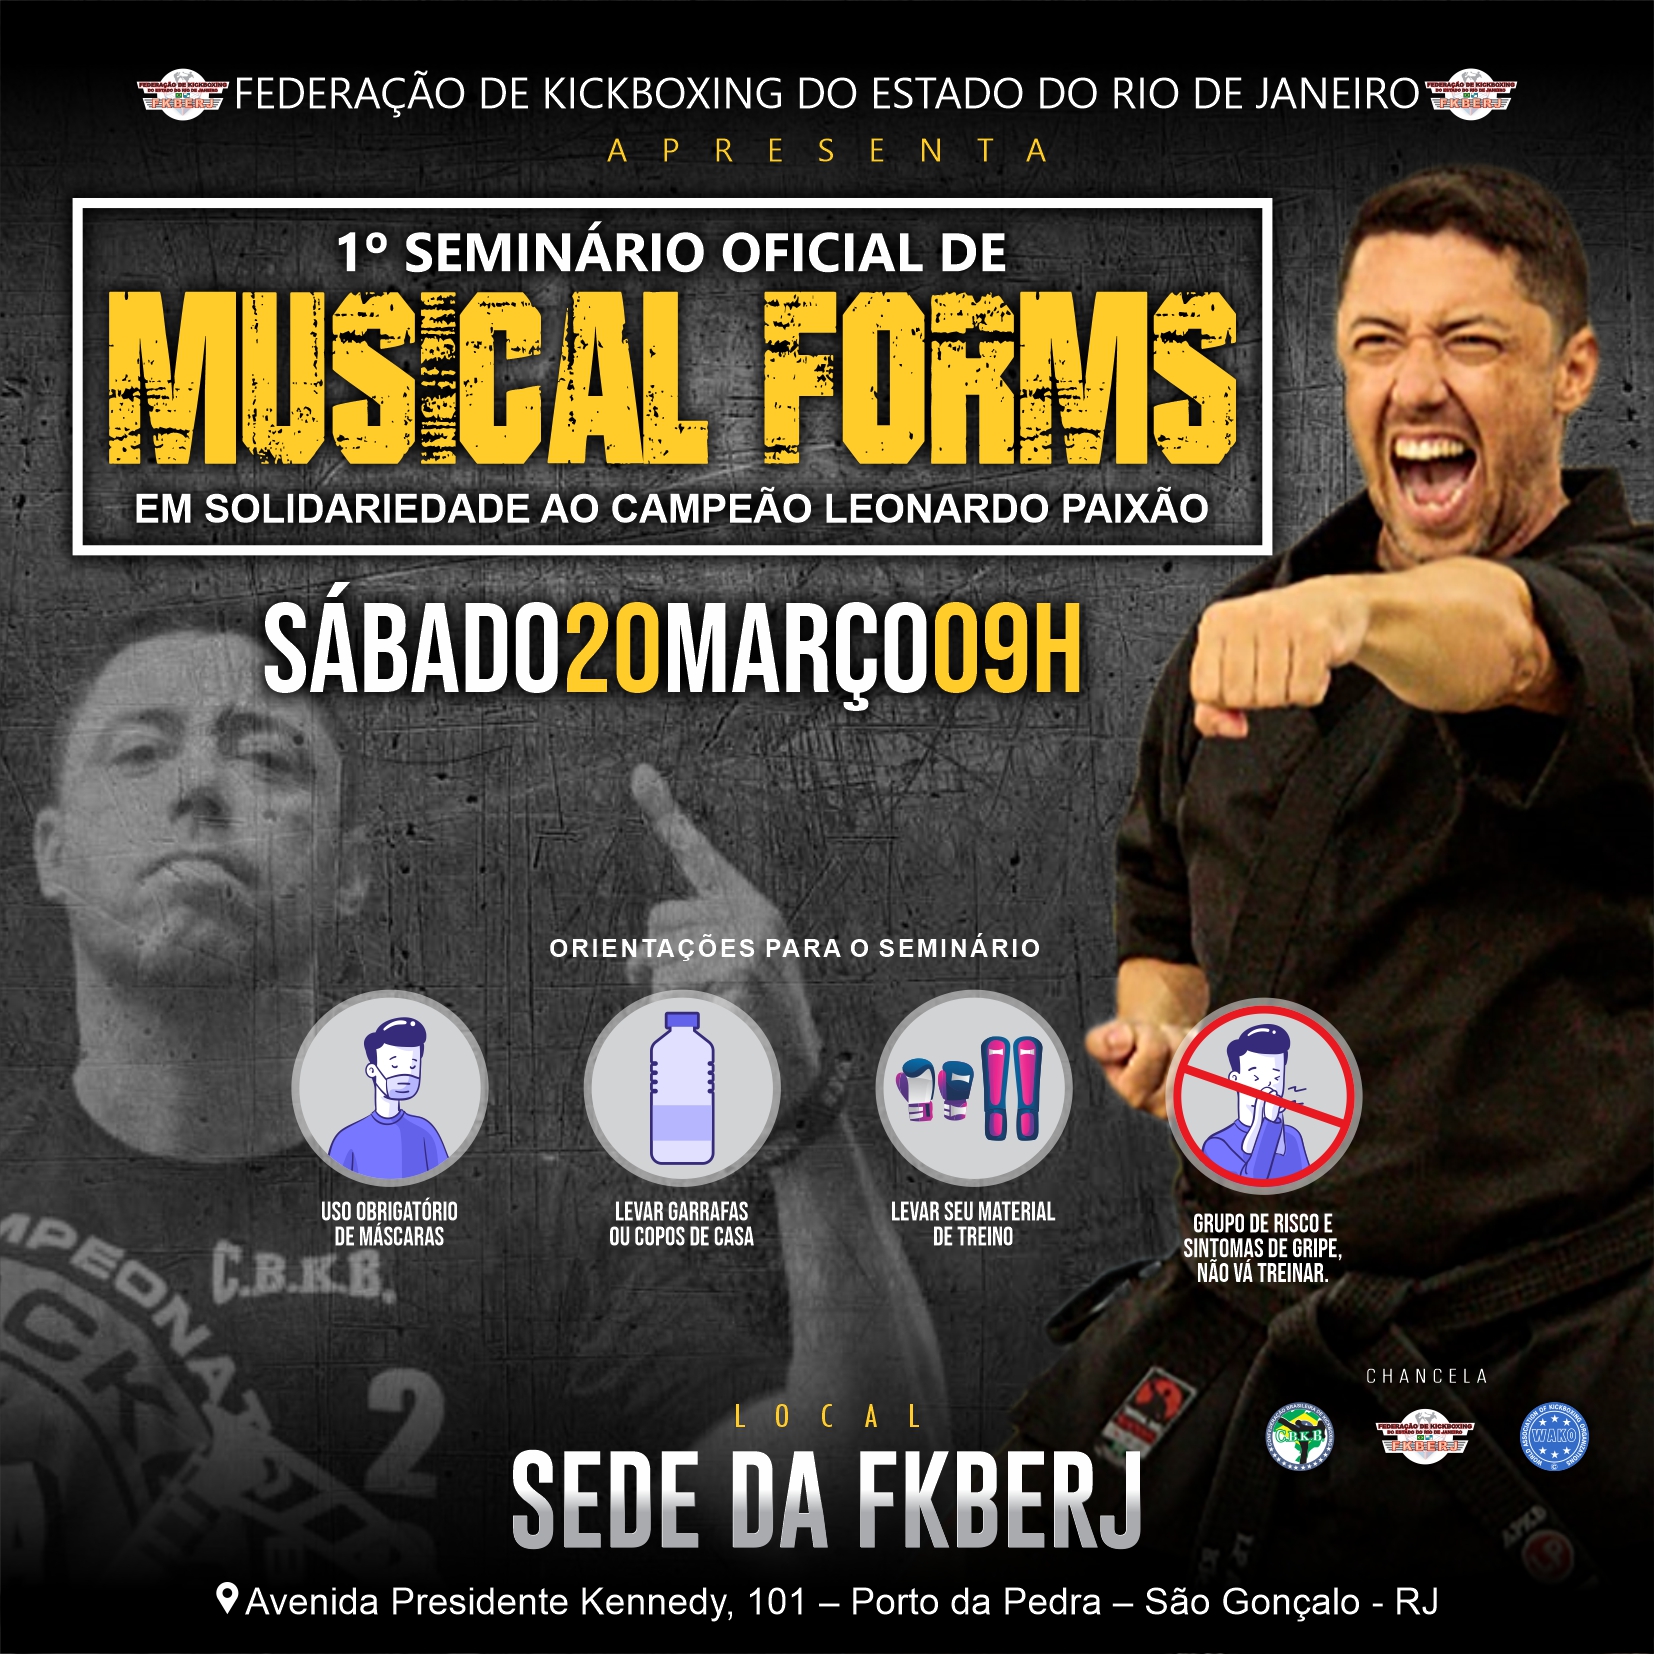 1º Seminário Oficial de Musical Forms 2021 em solidariedade ao Campeão Leonardo Paixão 